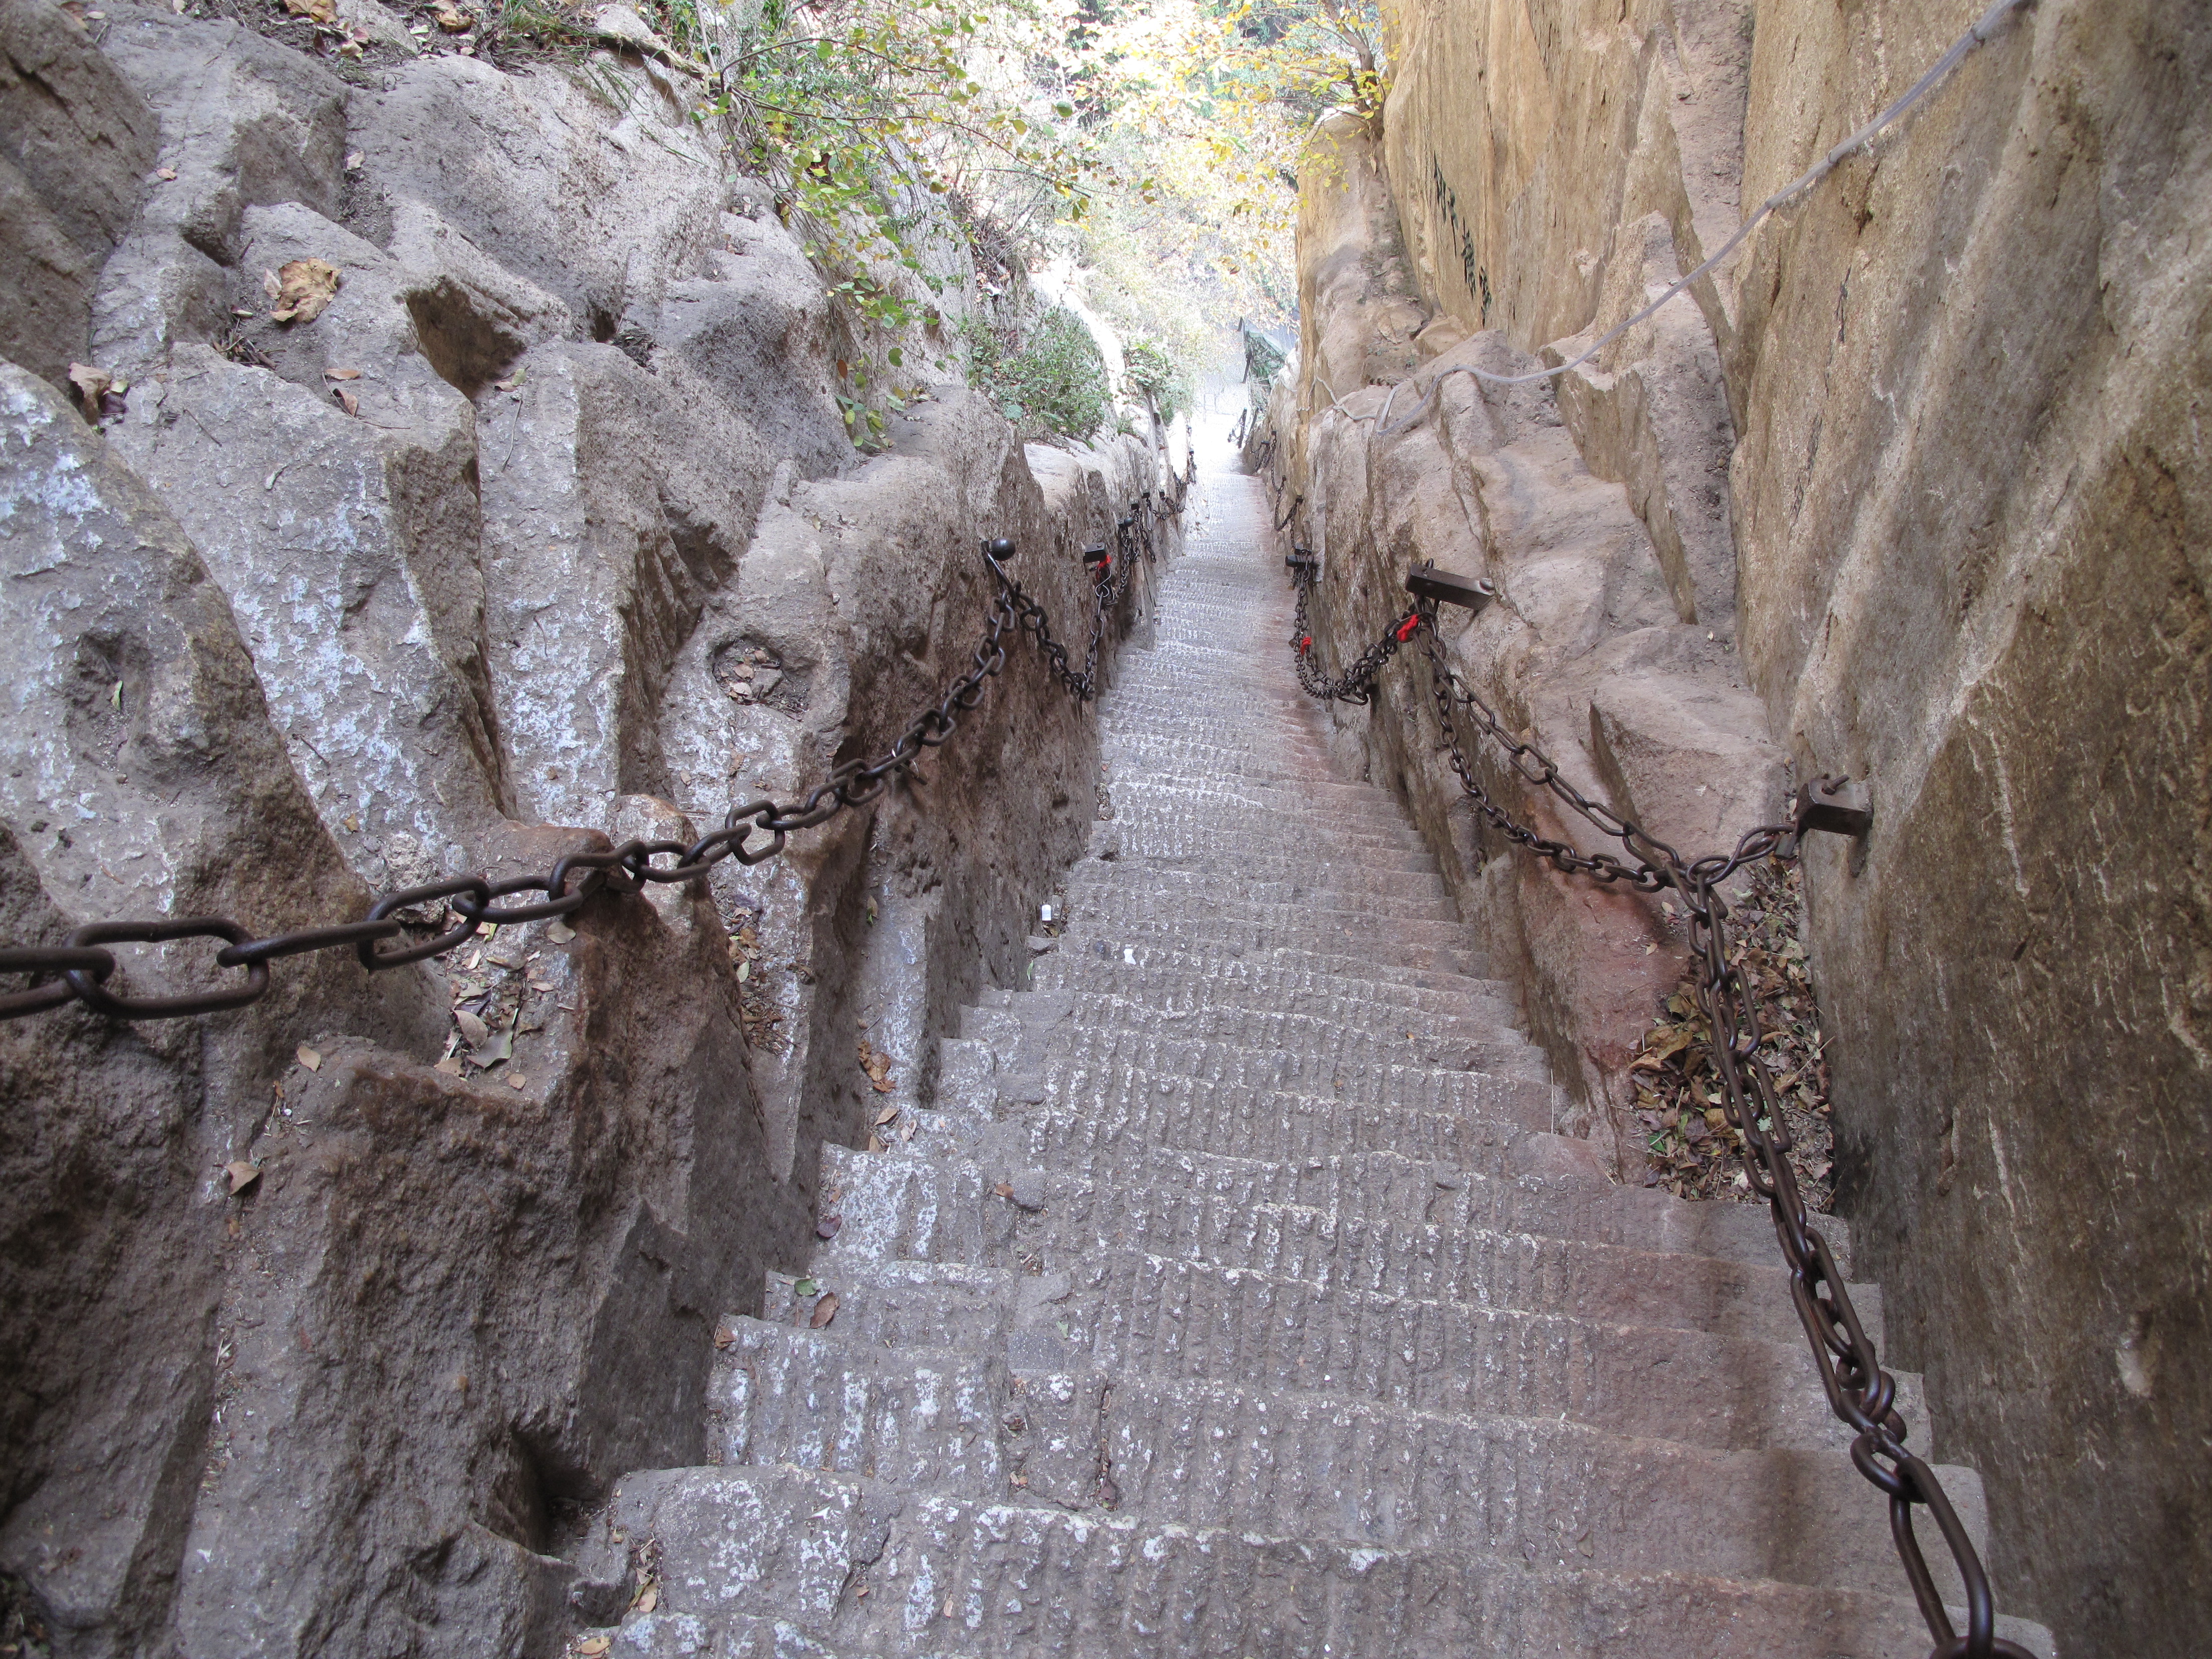 回心石往上就是华山著名的千尺幢百丈峡了,这是一条峭壁上的大裂缝,陷